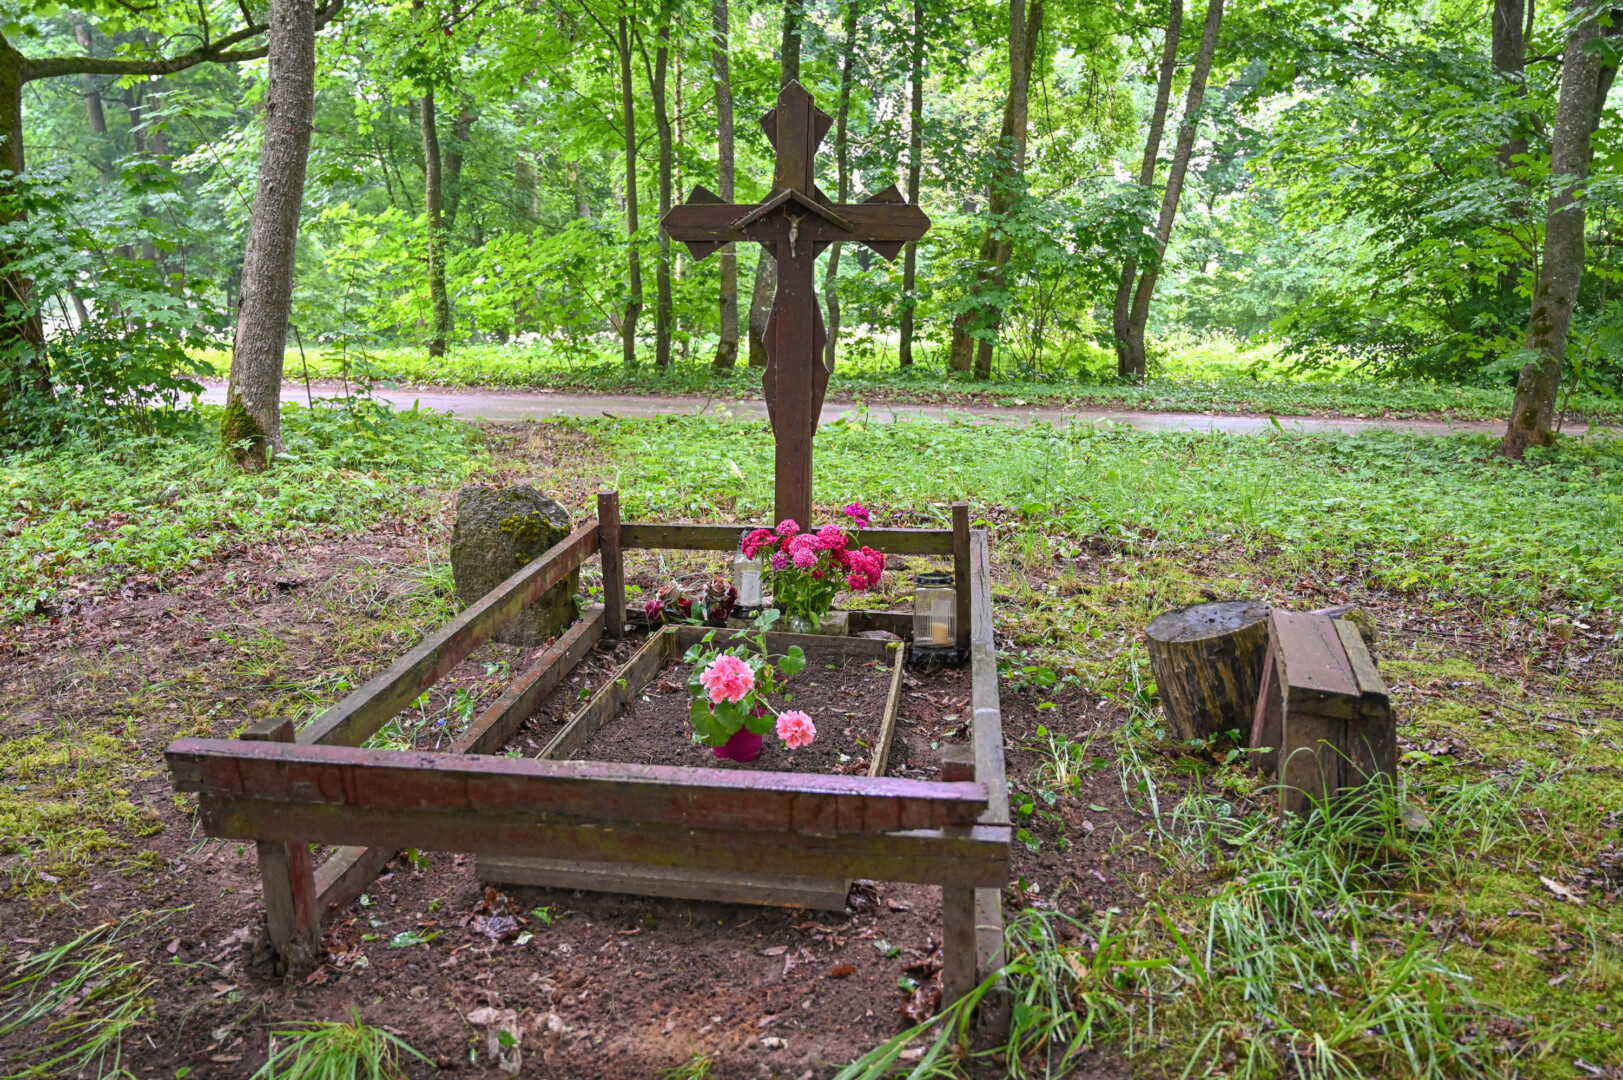 Mirusios Karpienės atminimą liberiškieičiai puoselėja prižiūrėdami jos kapą. P. ŽIDONIO nuotr.